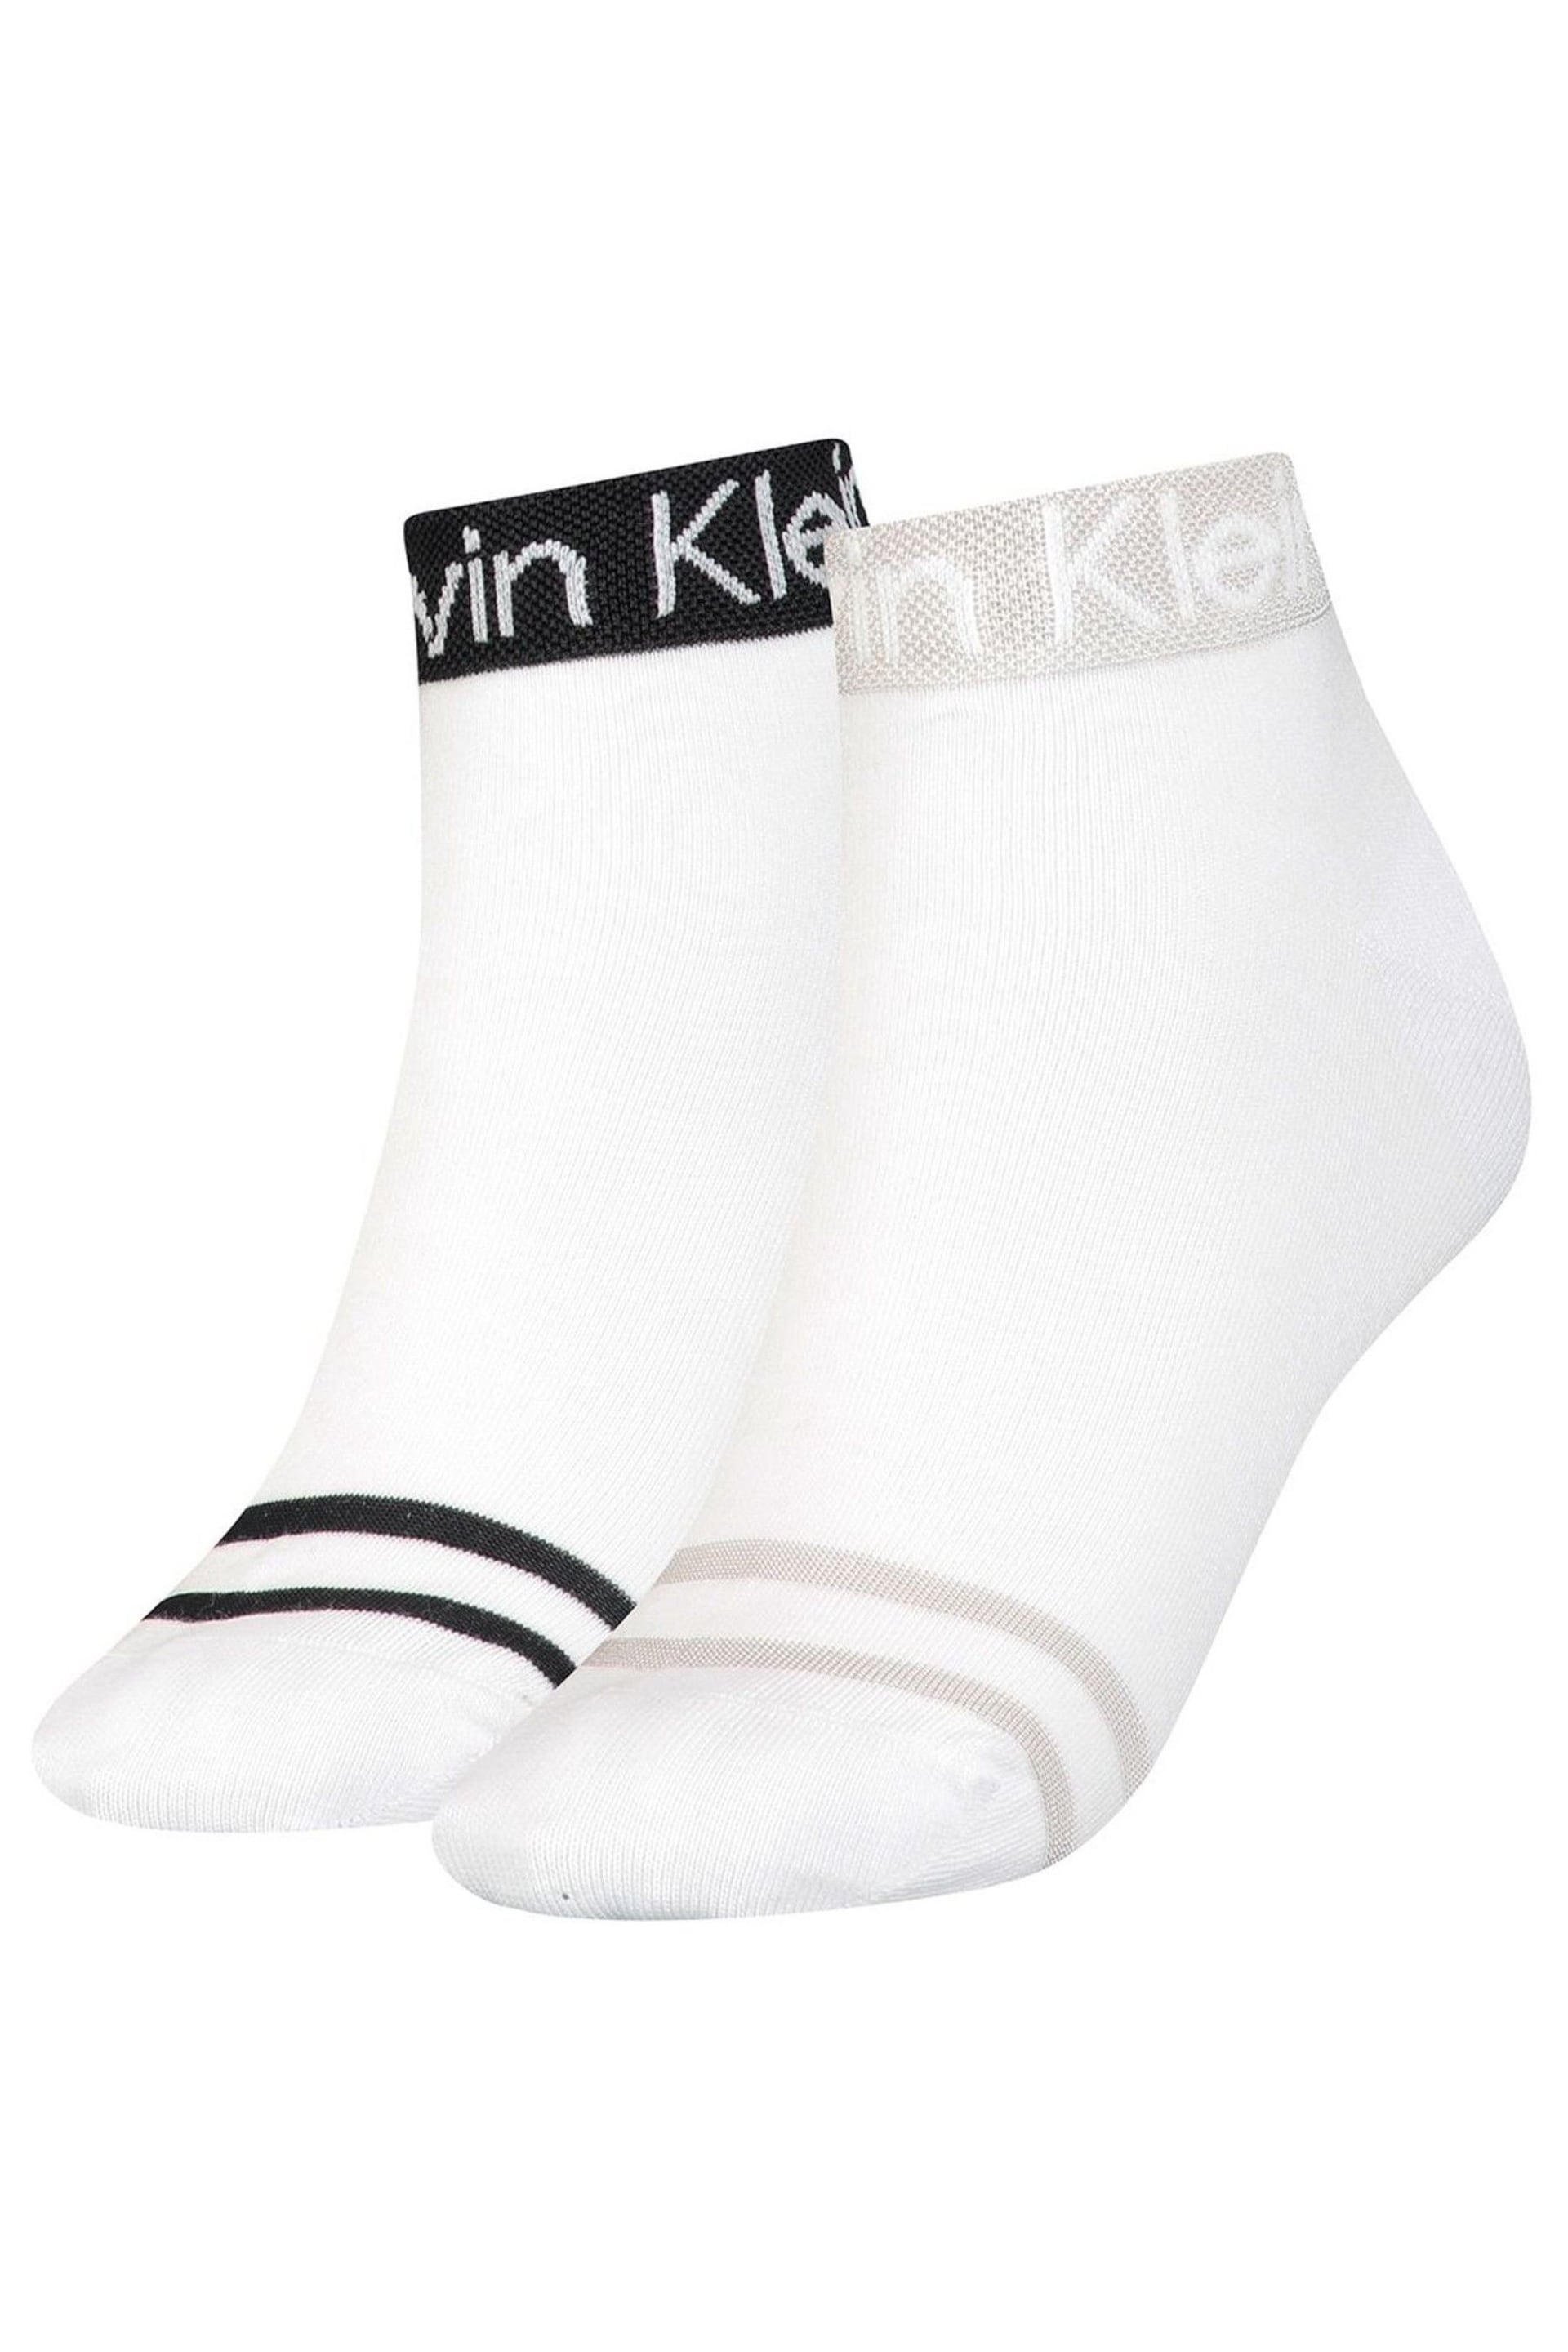 Calvin Klein White Logo Socks 2 Pack - Image 1 of 4